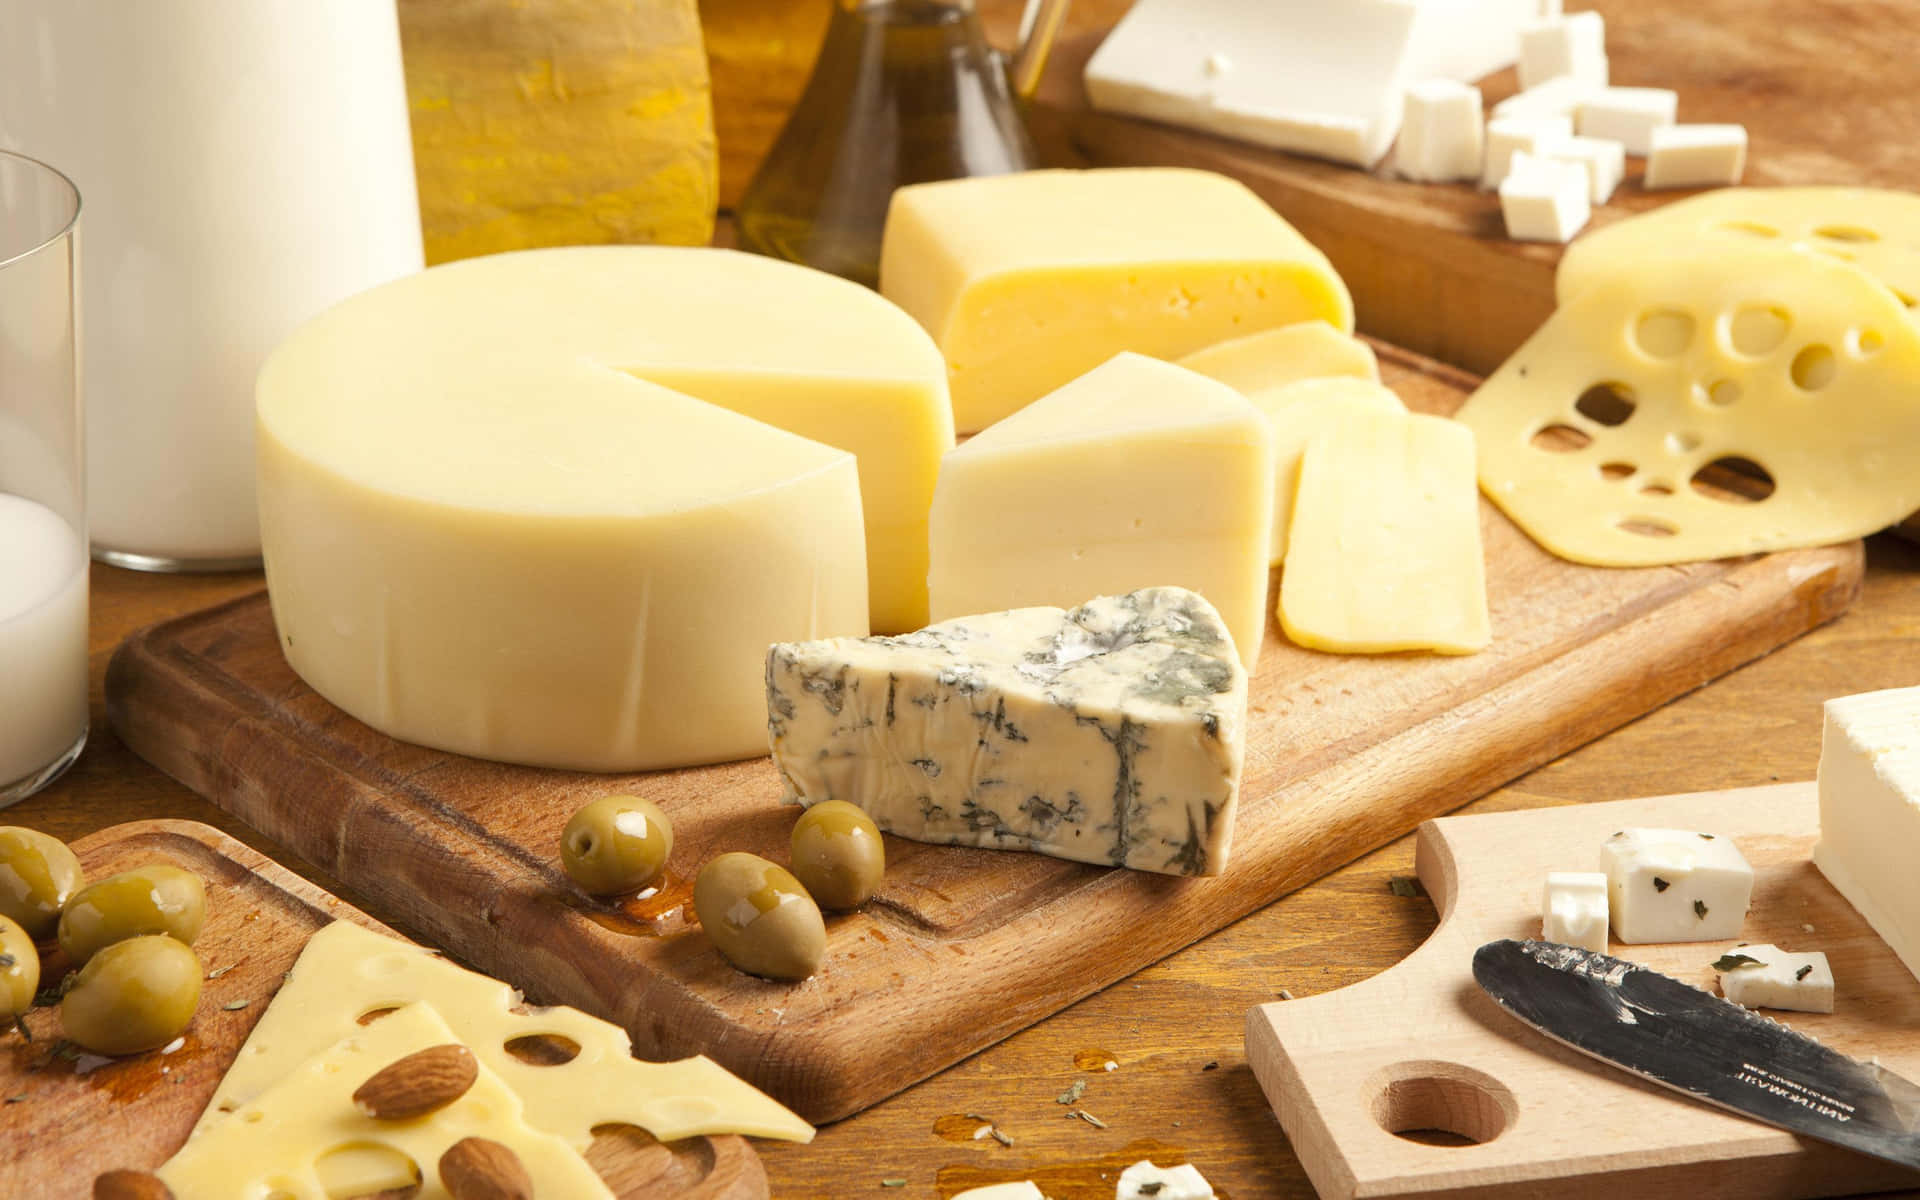 Luscious New Zealand cheese ready to enjoy!